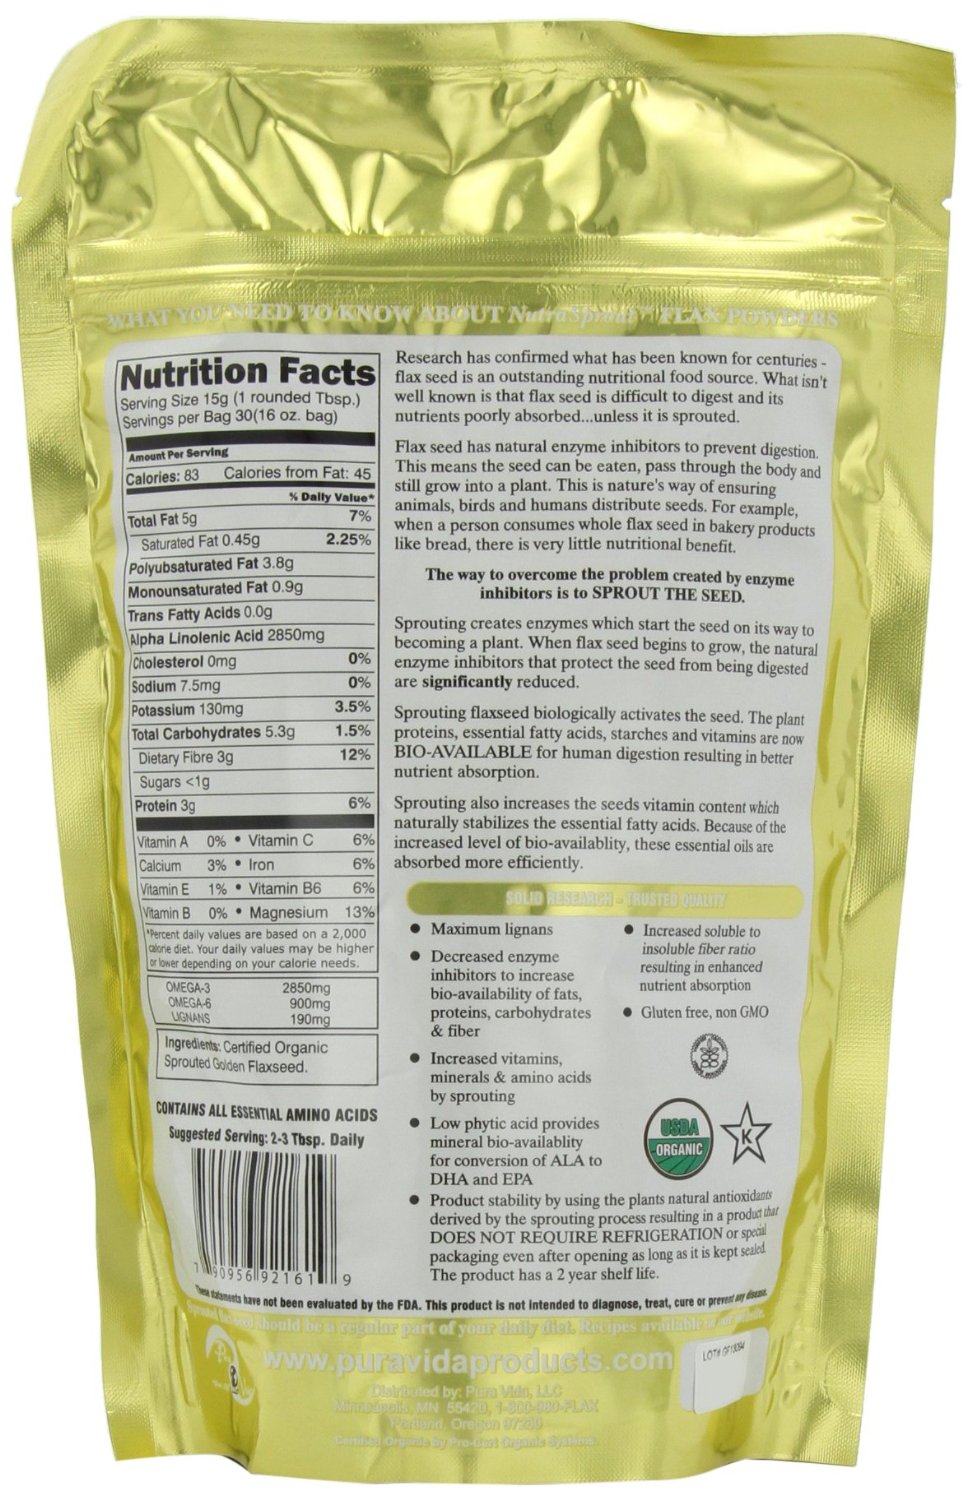 แฟลกซีด ยี่ห้อที่ขายดีเป็นอันดับที่ 5 ของอเมริกา	Sprout Revolution Nutrasprout Premium Organic Sprouted Ground Flax, 16-Ounce Pouch